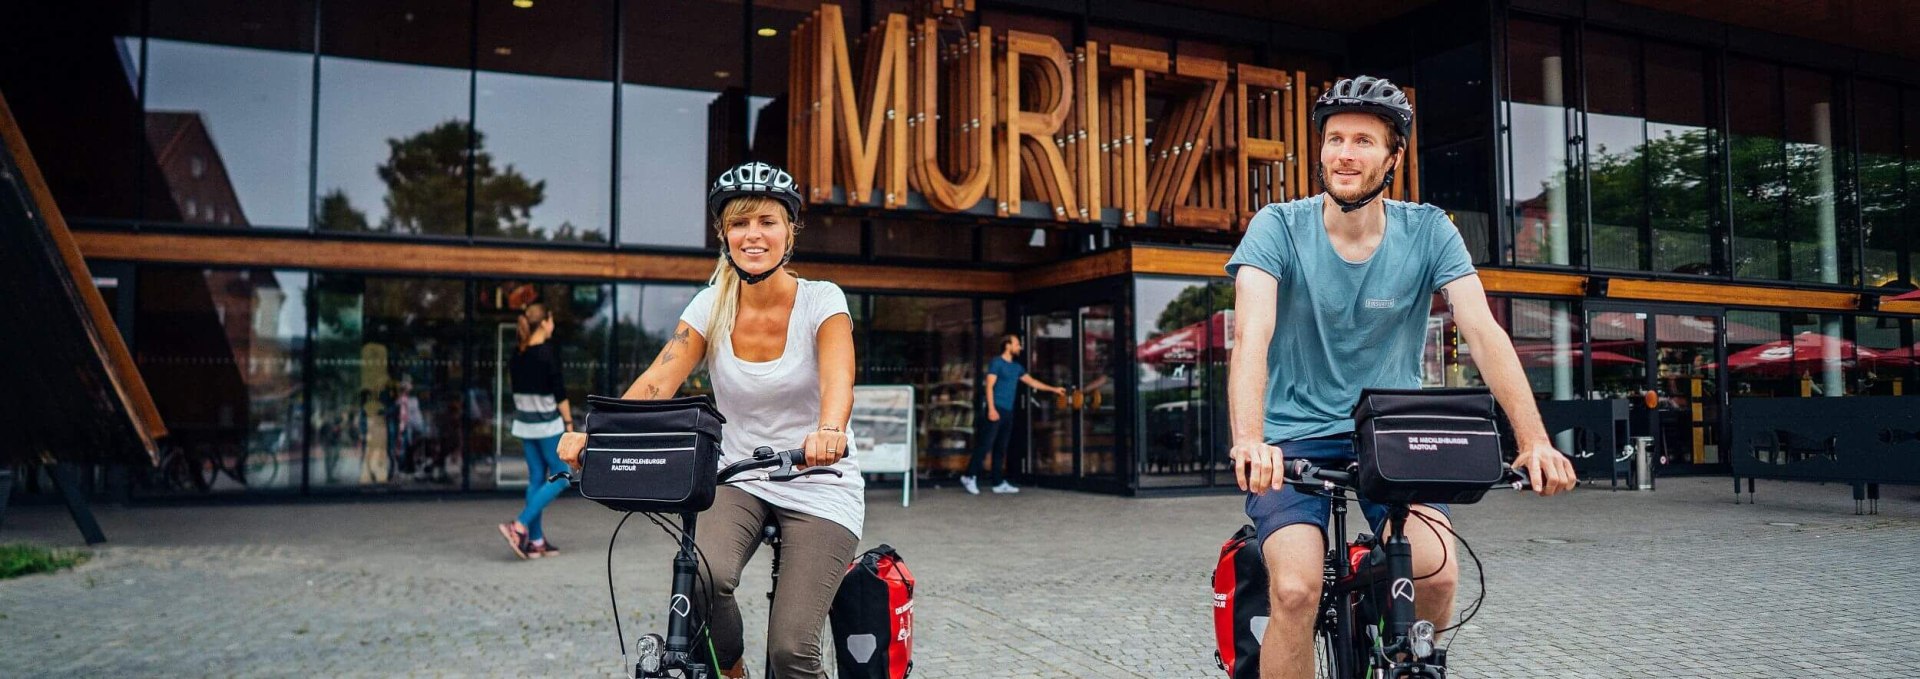 Mit dem Fahrrad zum Müritzeum in Waren (Müritz), © TMV/Gänsicke